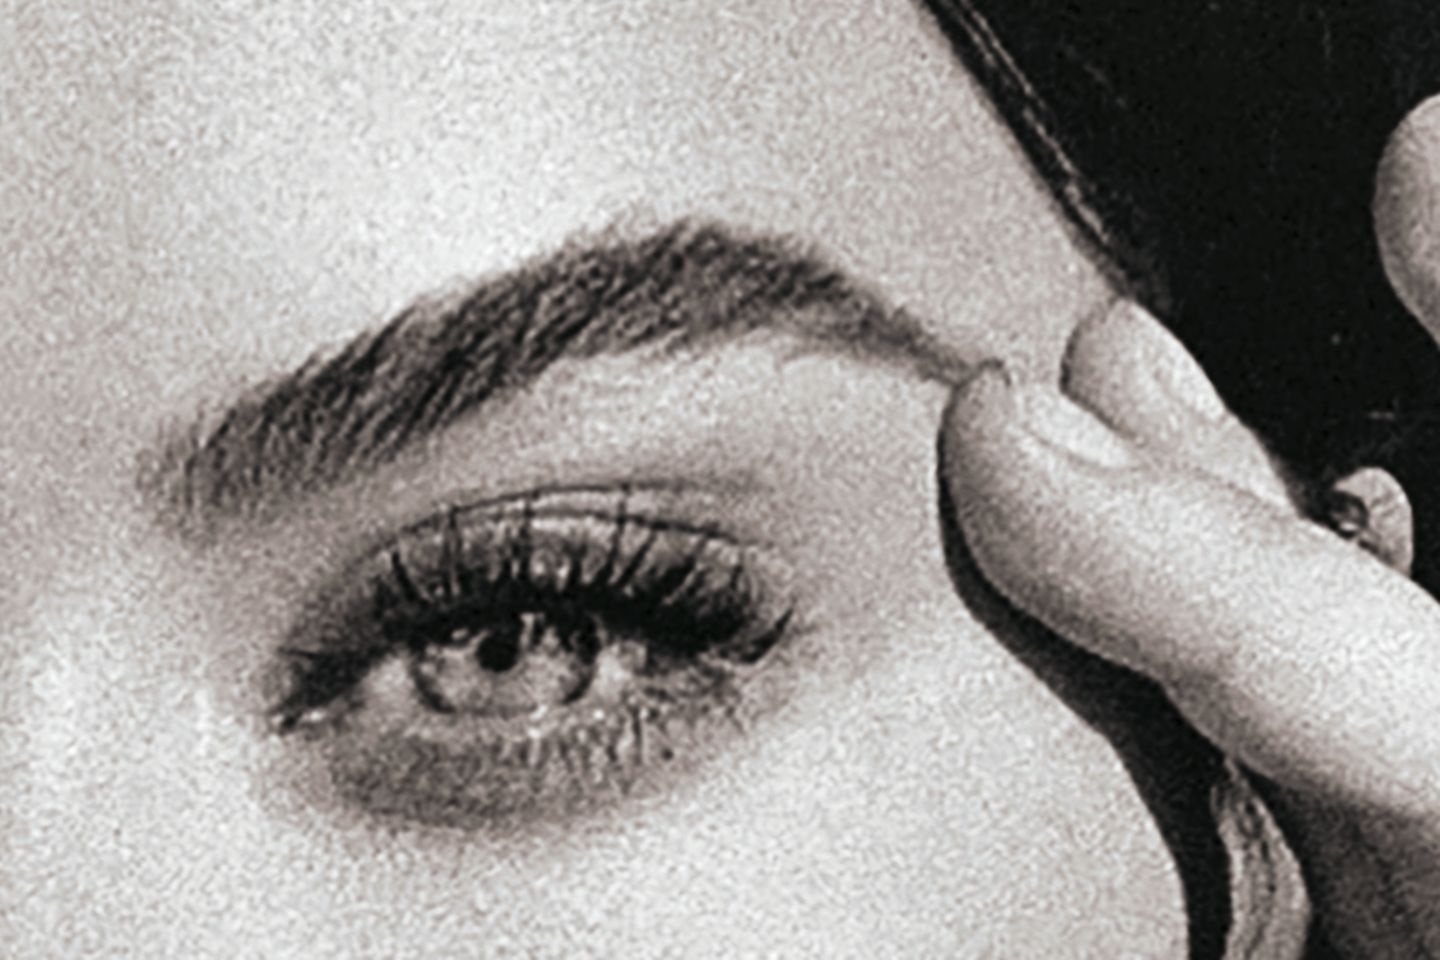 Definiert und natürlich – Theas Augenbrauen treffen das Beauty-Ideal vieler Frauen.